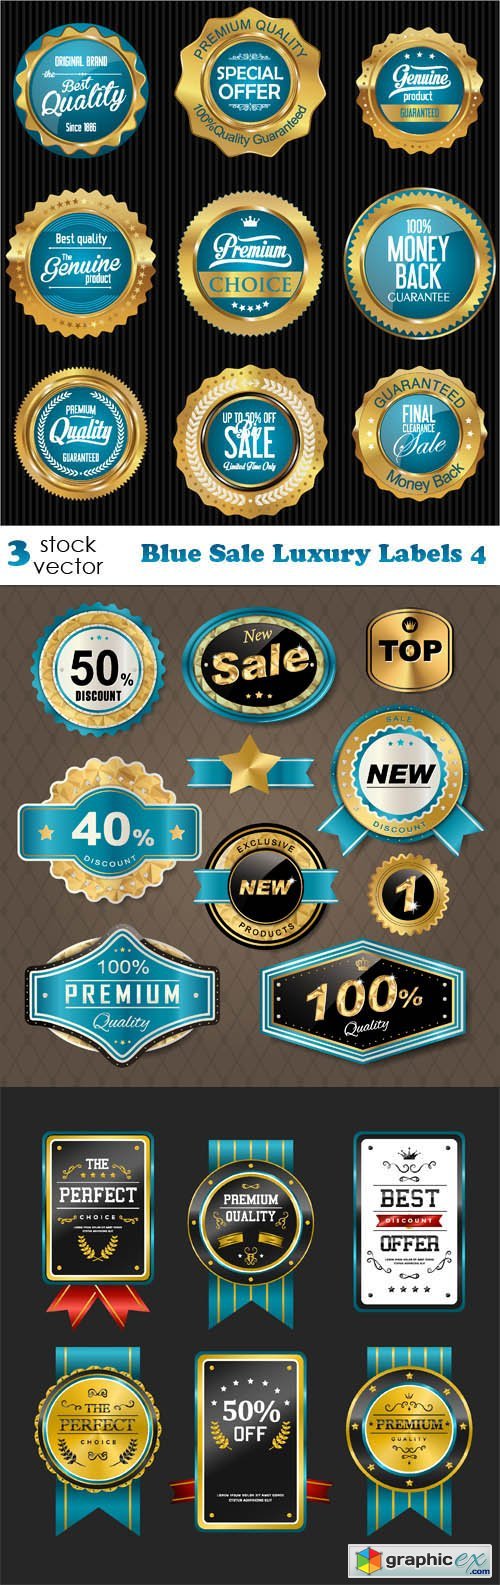 Blue Sale Luxury Labels 4